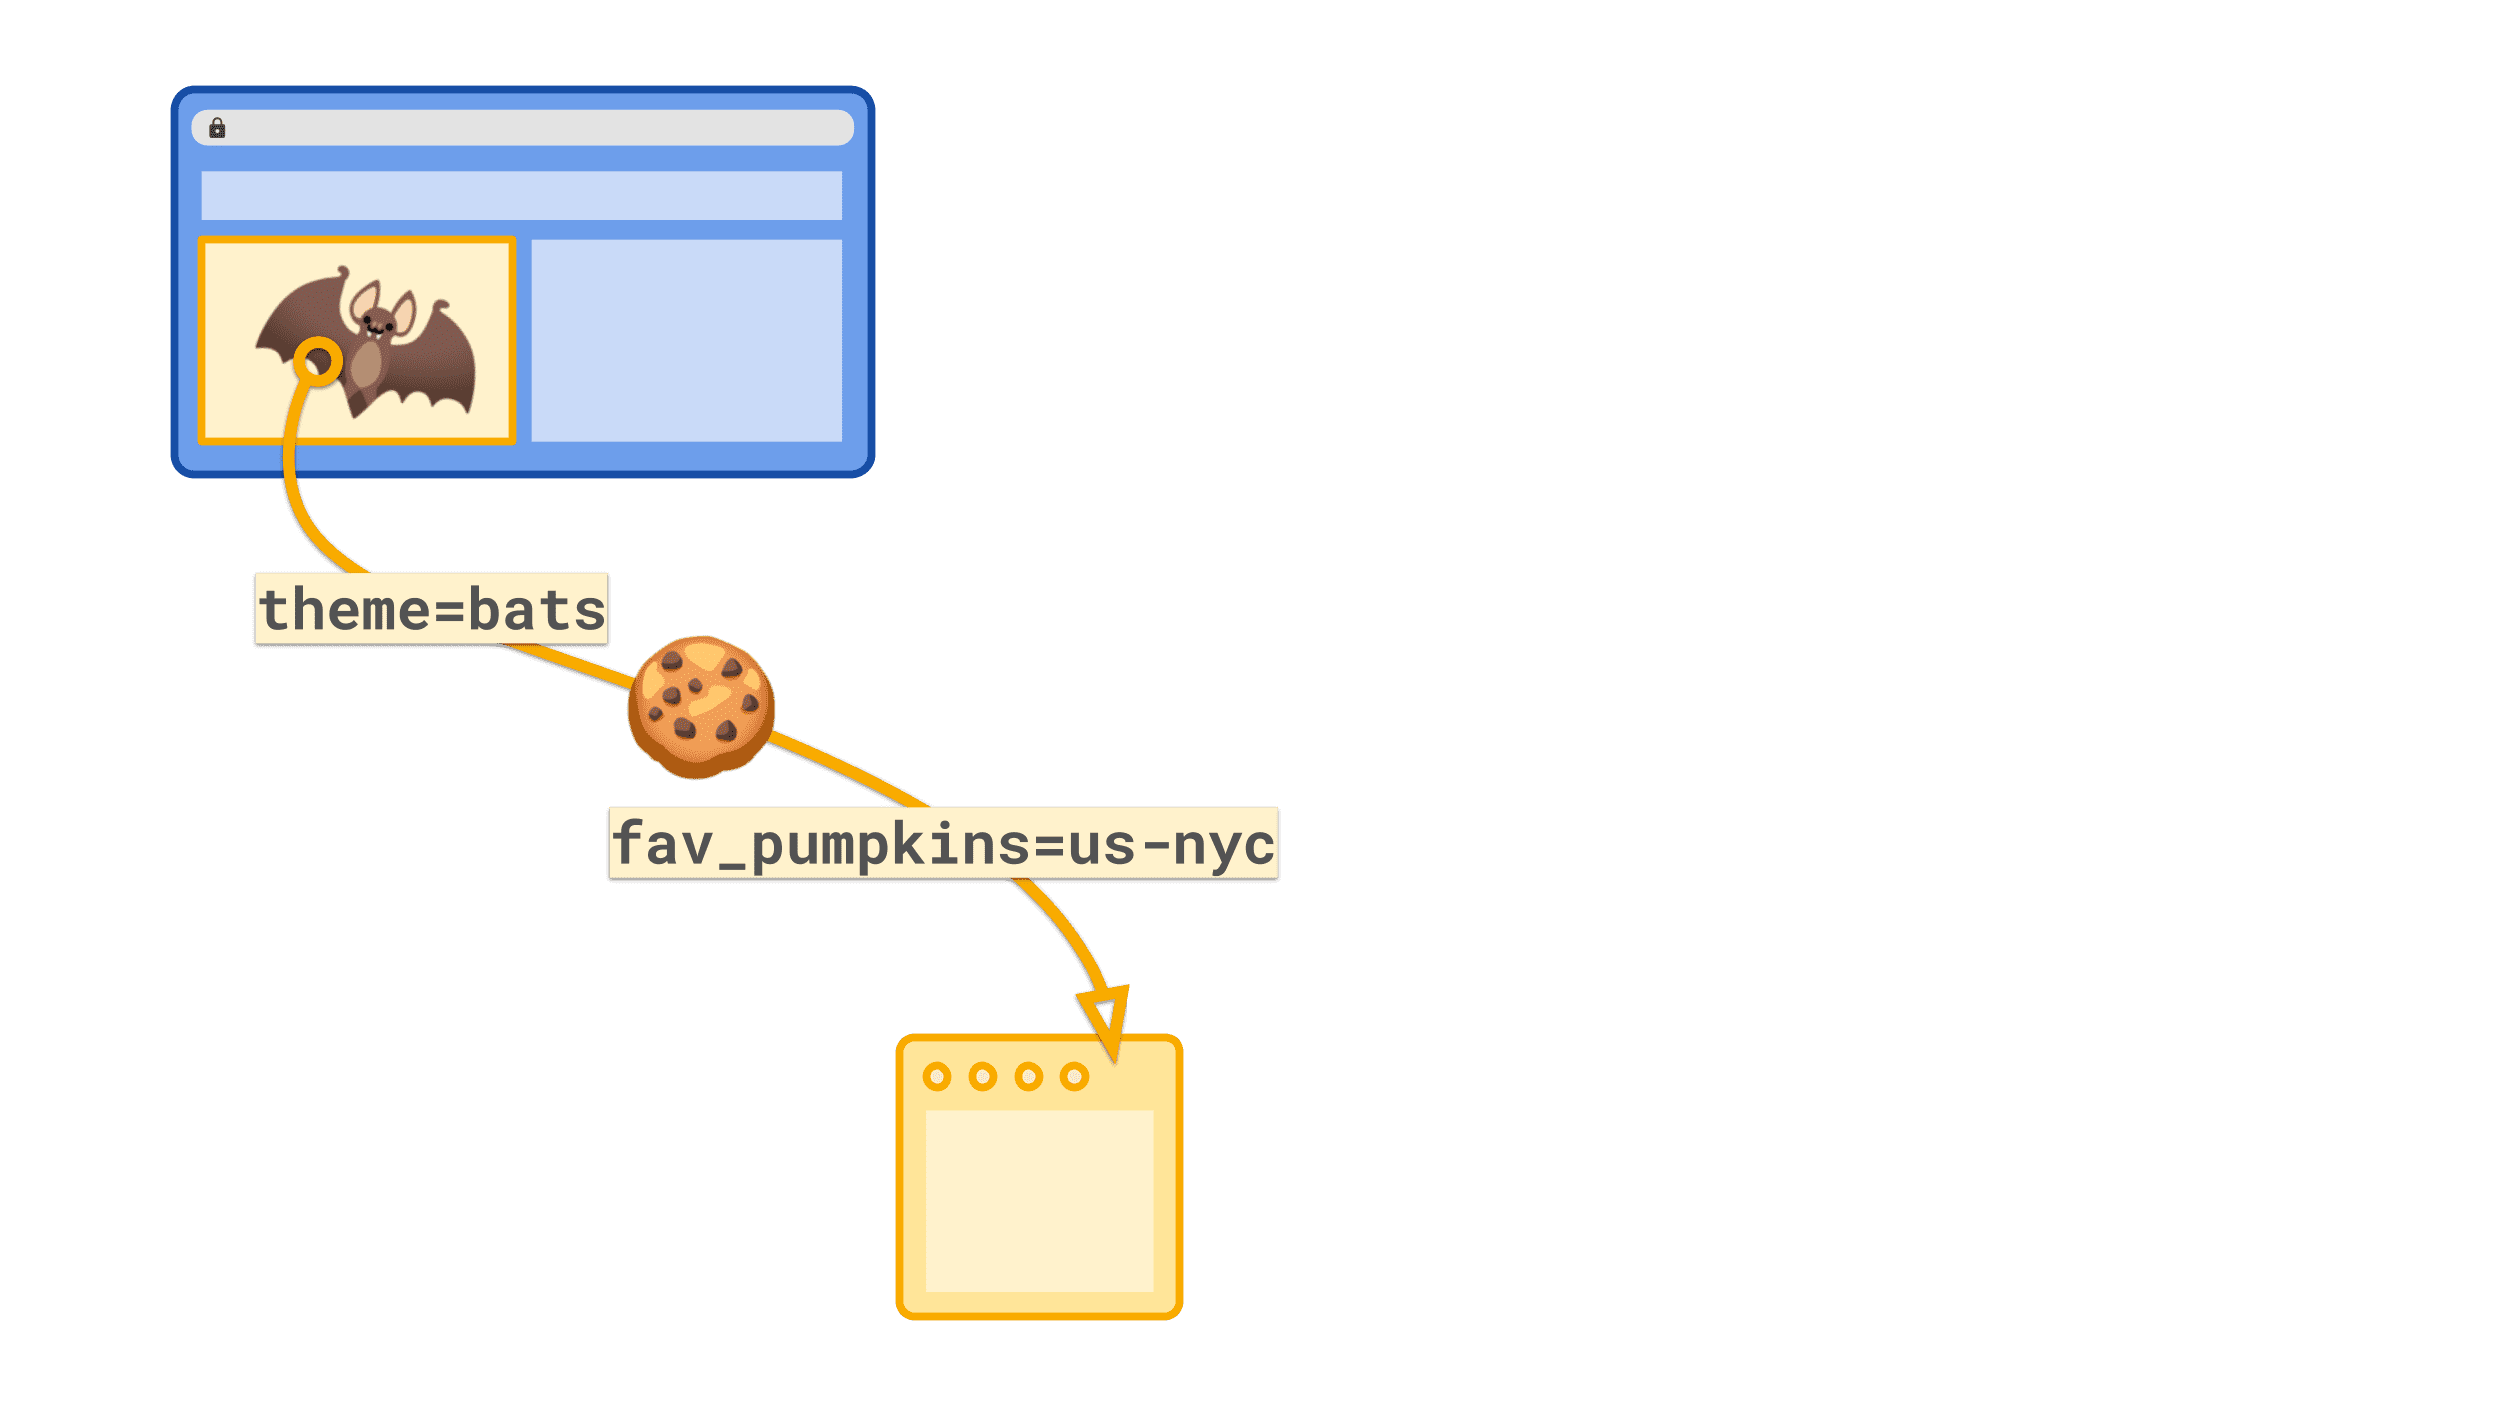 ملف تعريف ارتباط تابع لجهة خارجية يحمل قيمة بسيطة مثل image=bats أو fav_pumpkins=us-nyc